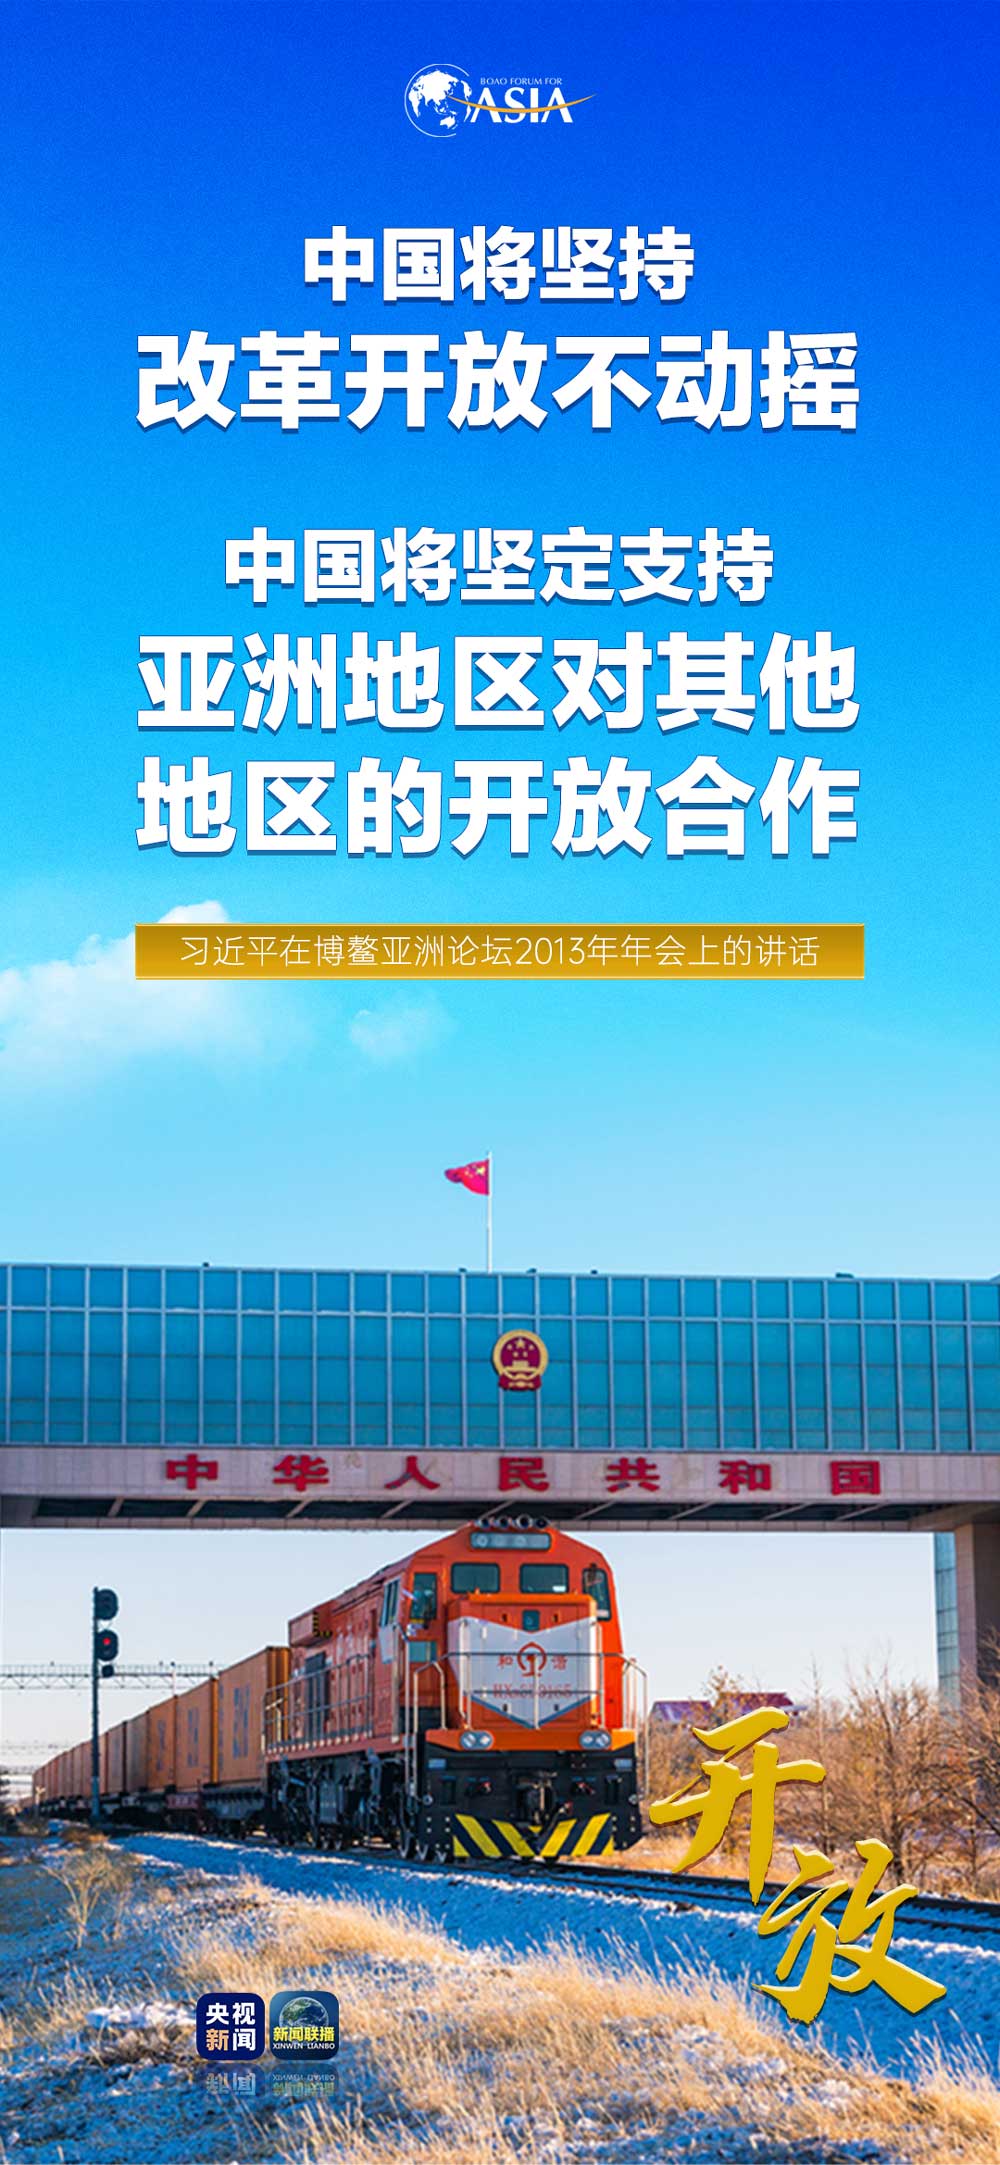 上海市增加3例本土确诊病案